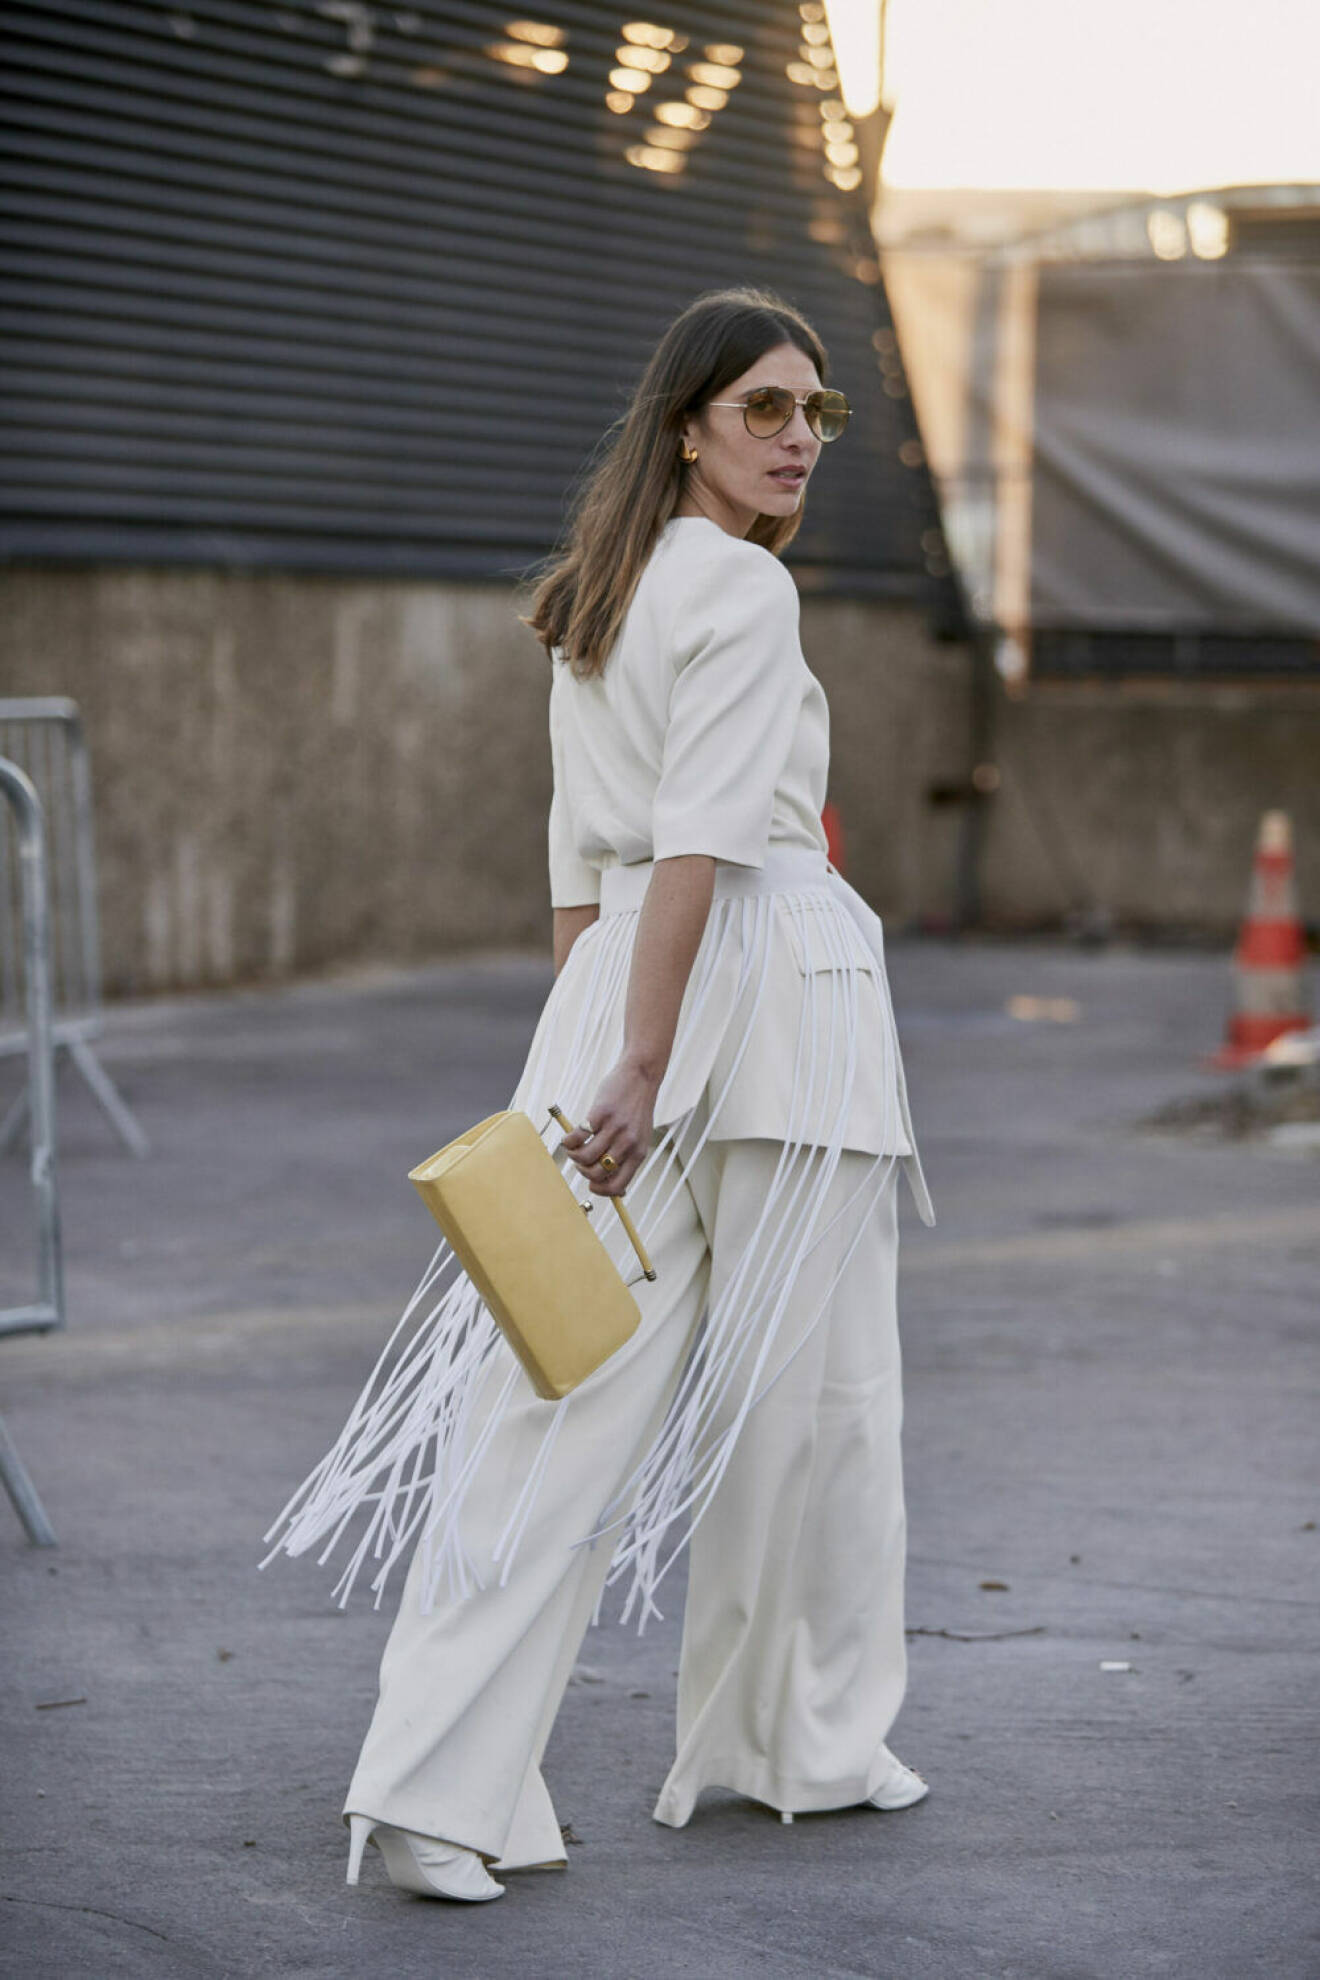 Streetstyle Paris FW, kvinna i vit outfit med gul väska.